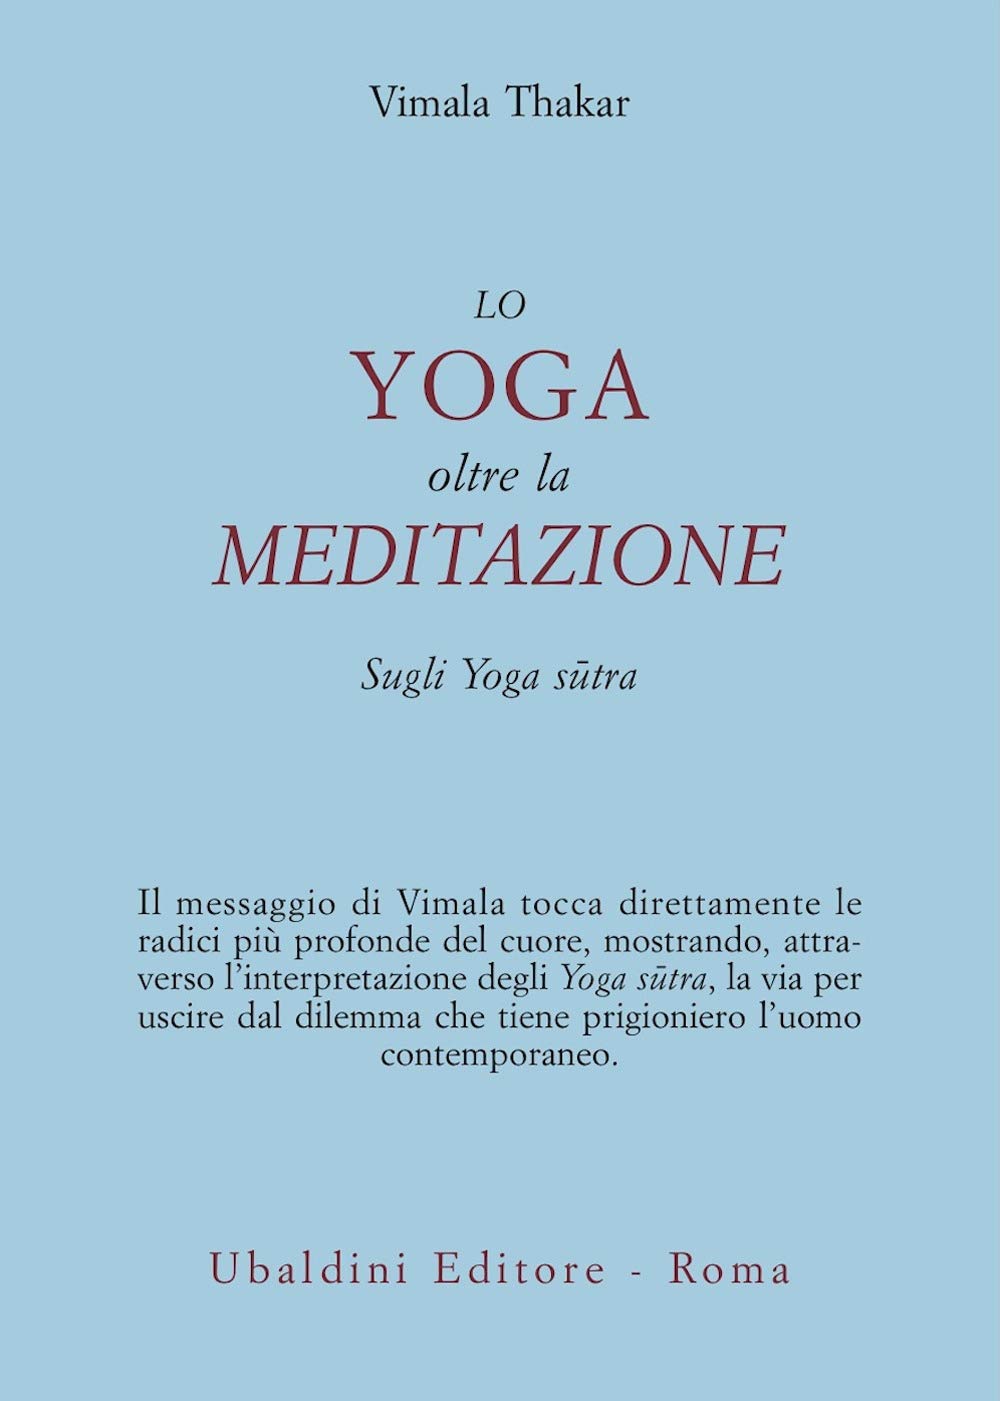 Lo Yoga Oltre la Meditazione. Sugli Yoga Sutra - Vimala Thakar